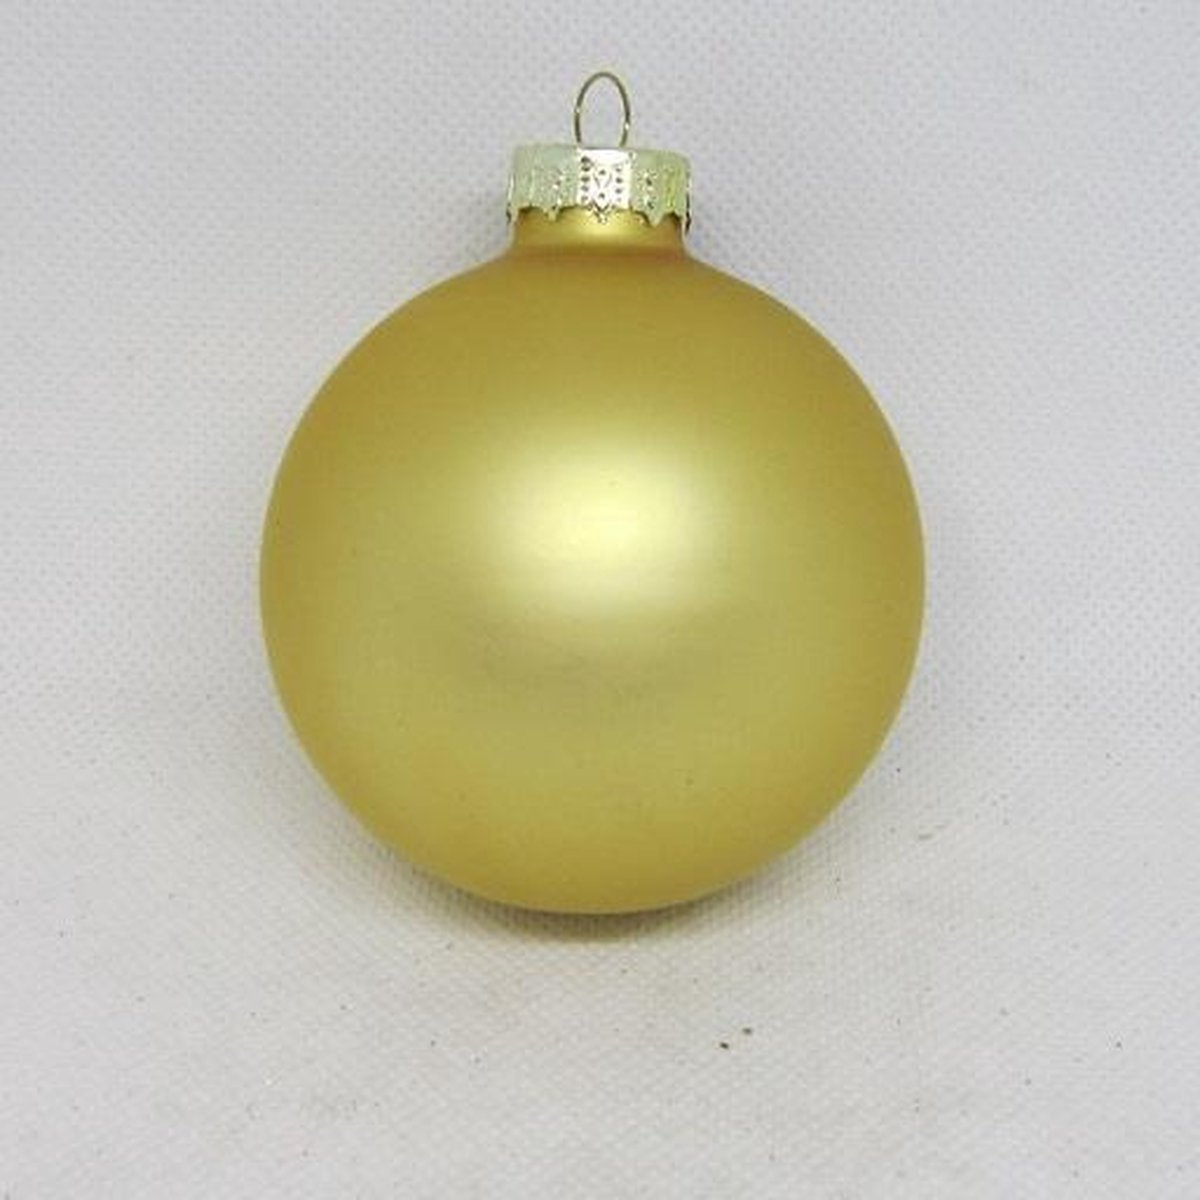 Kerstbal, mat-goud, mix-maten, 5 stuks: Ø 4 t/m 6 cm